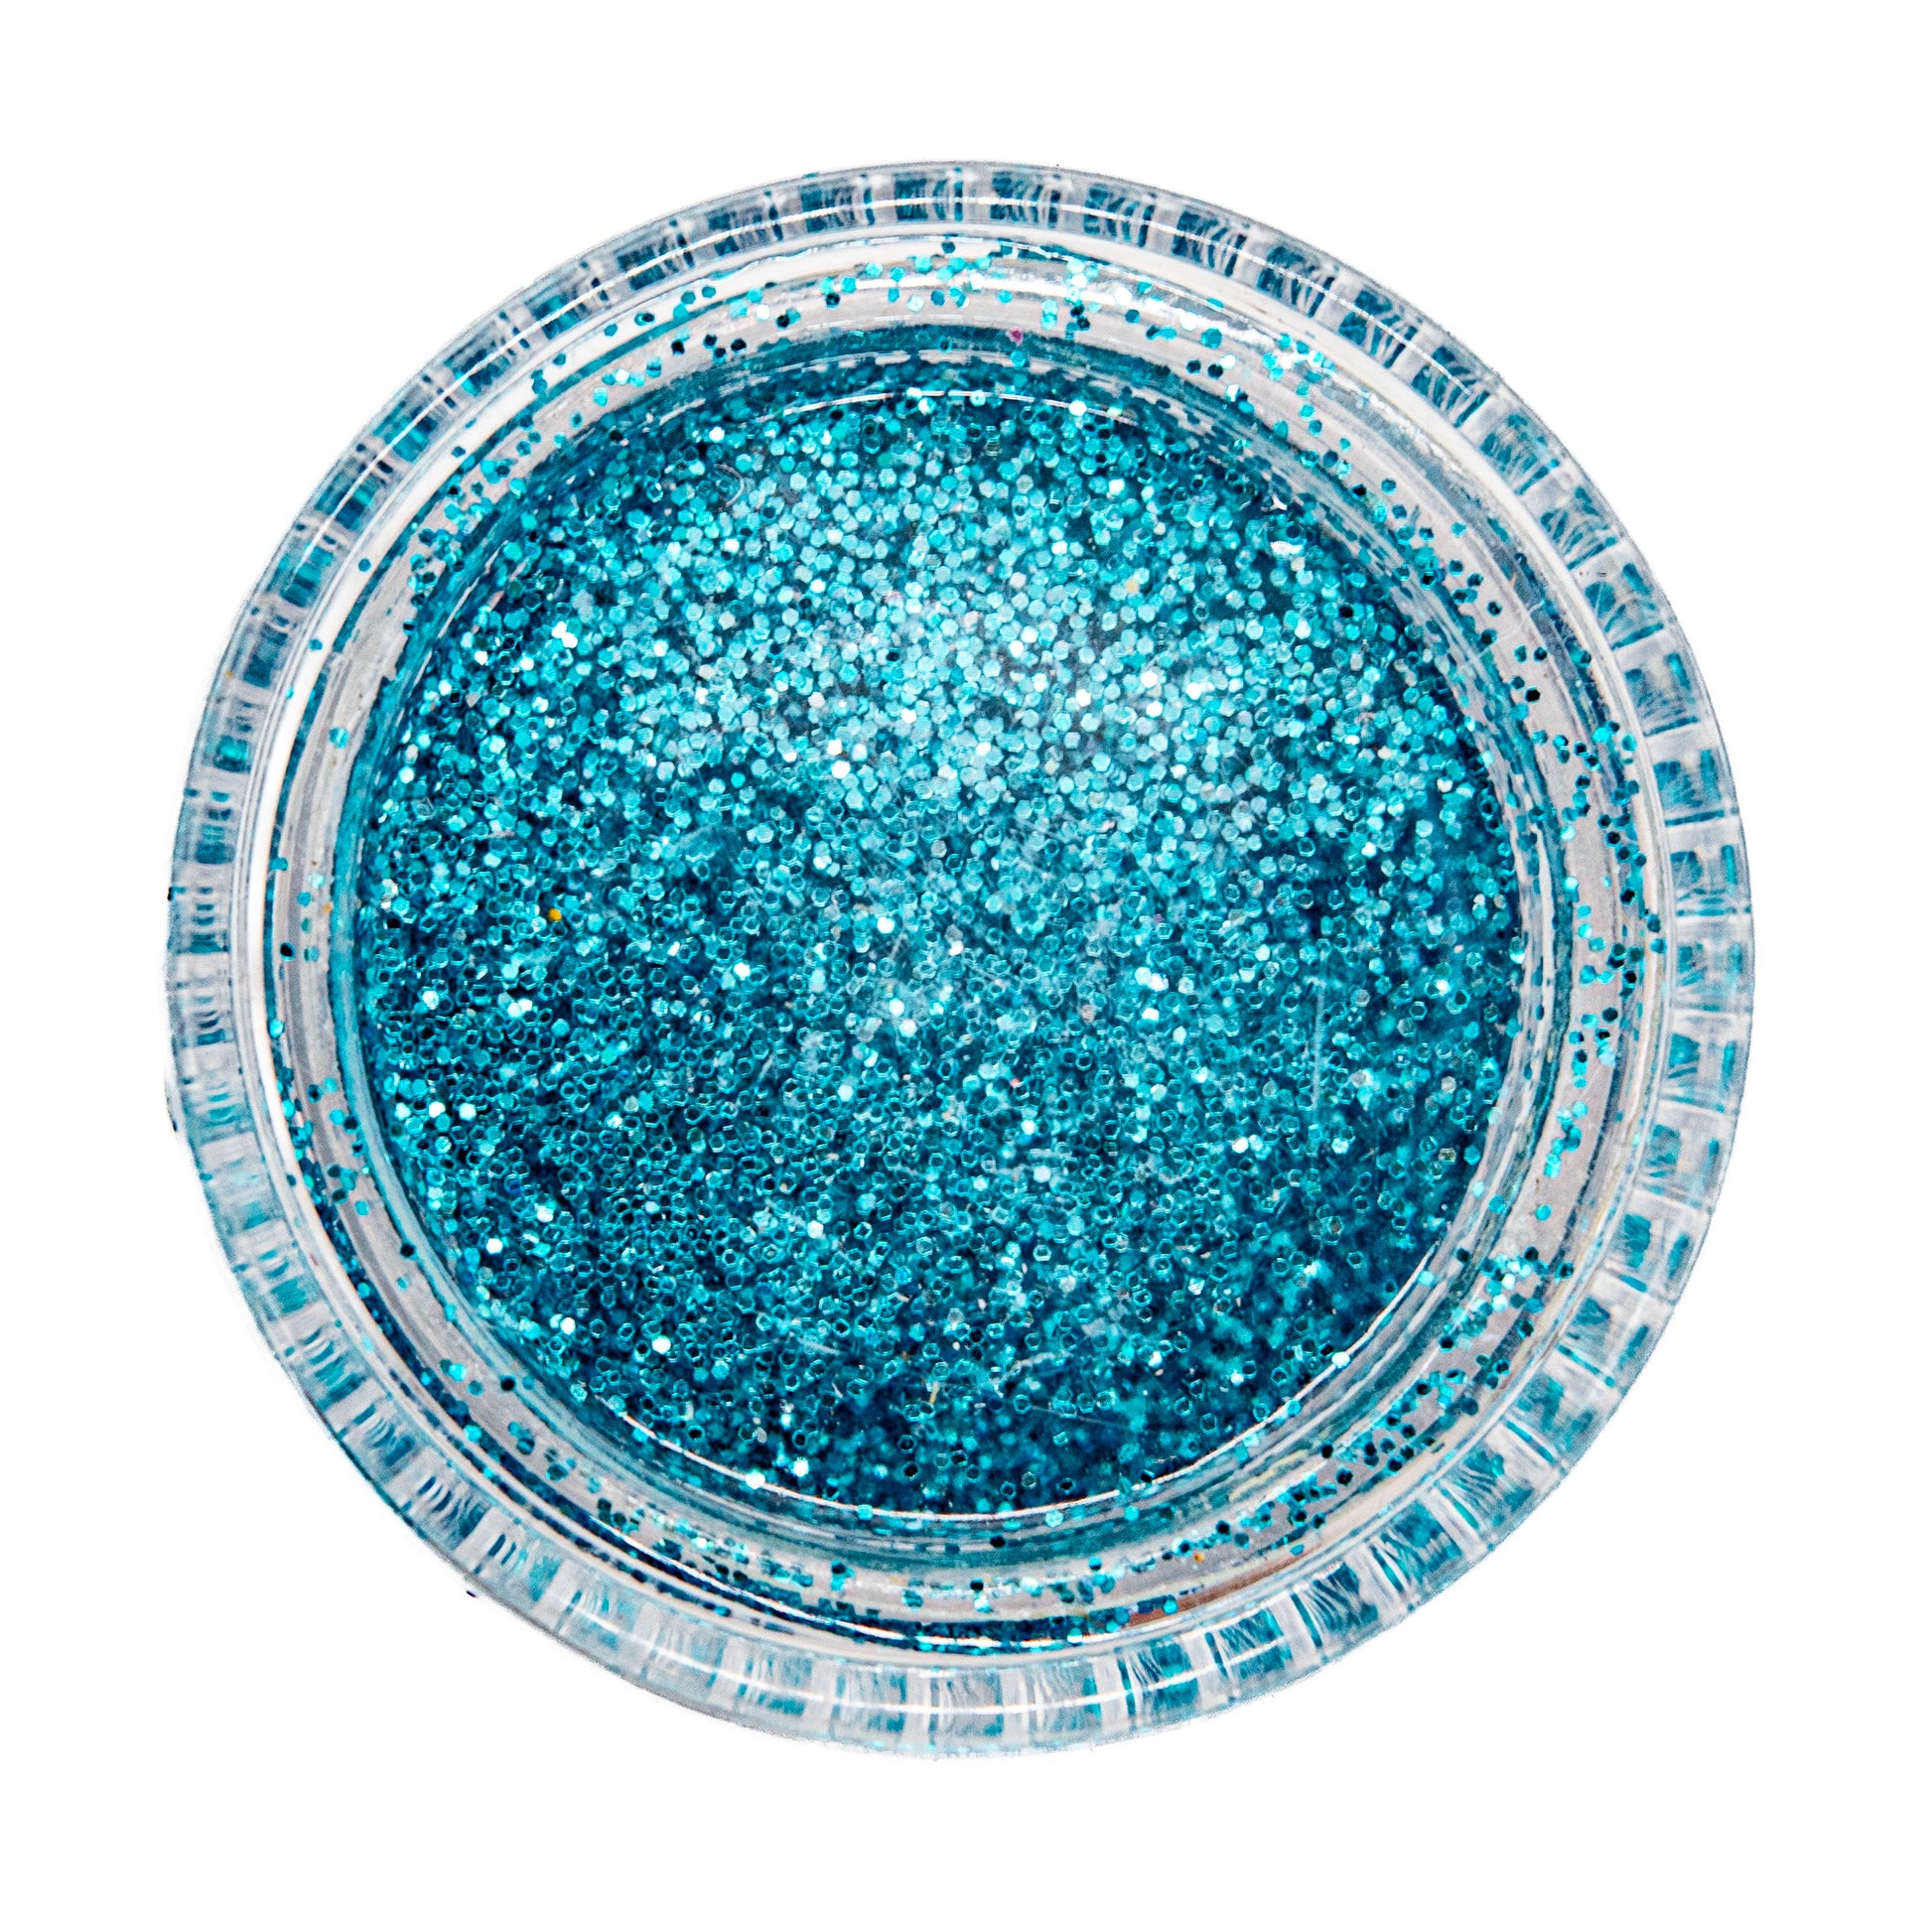 Glitter Superfine Sm Turquoise - Default (GLISMTUR)